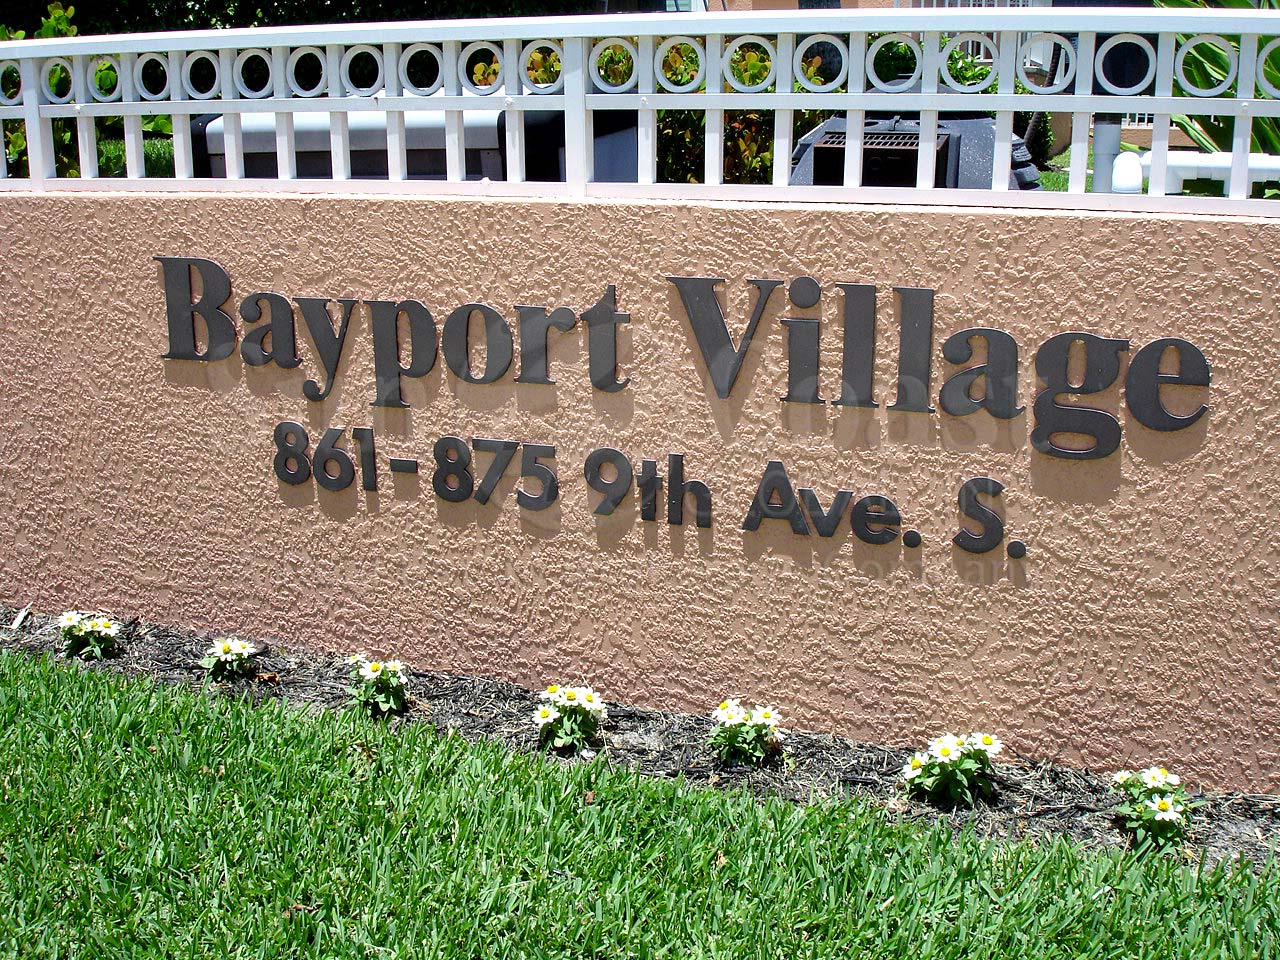 Bayport Village Signage